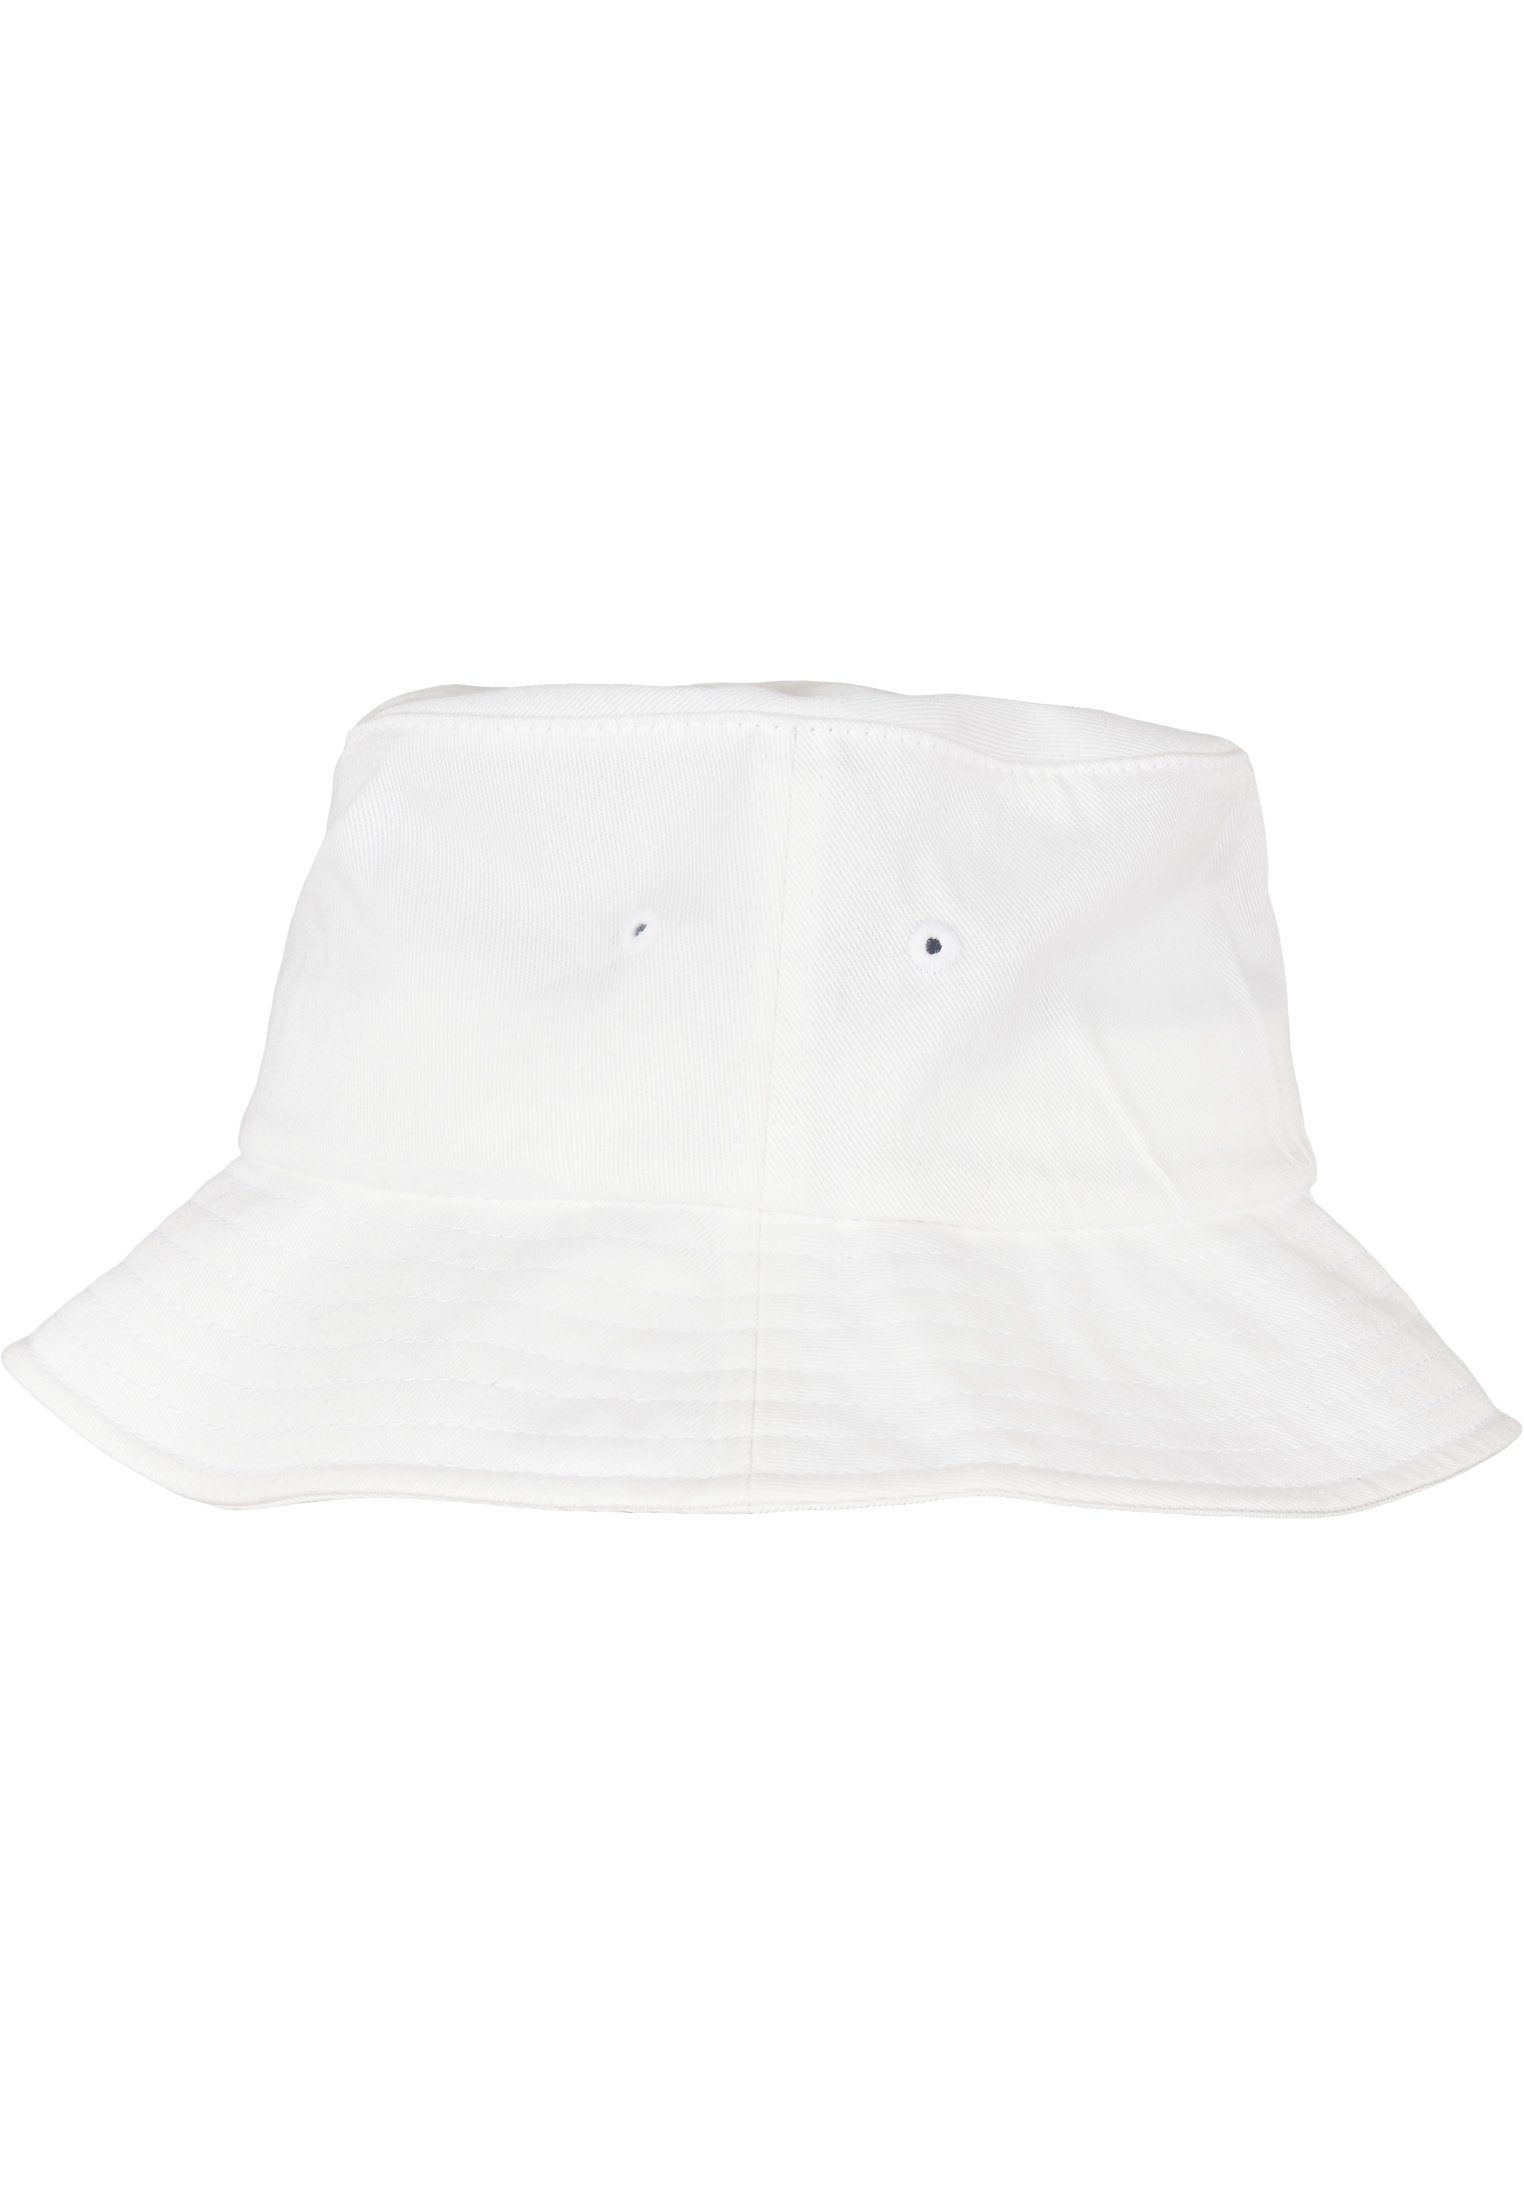 Flex Hat Flexfit Accessoires Cotton white Organic Cap Bucket